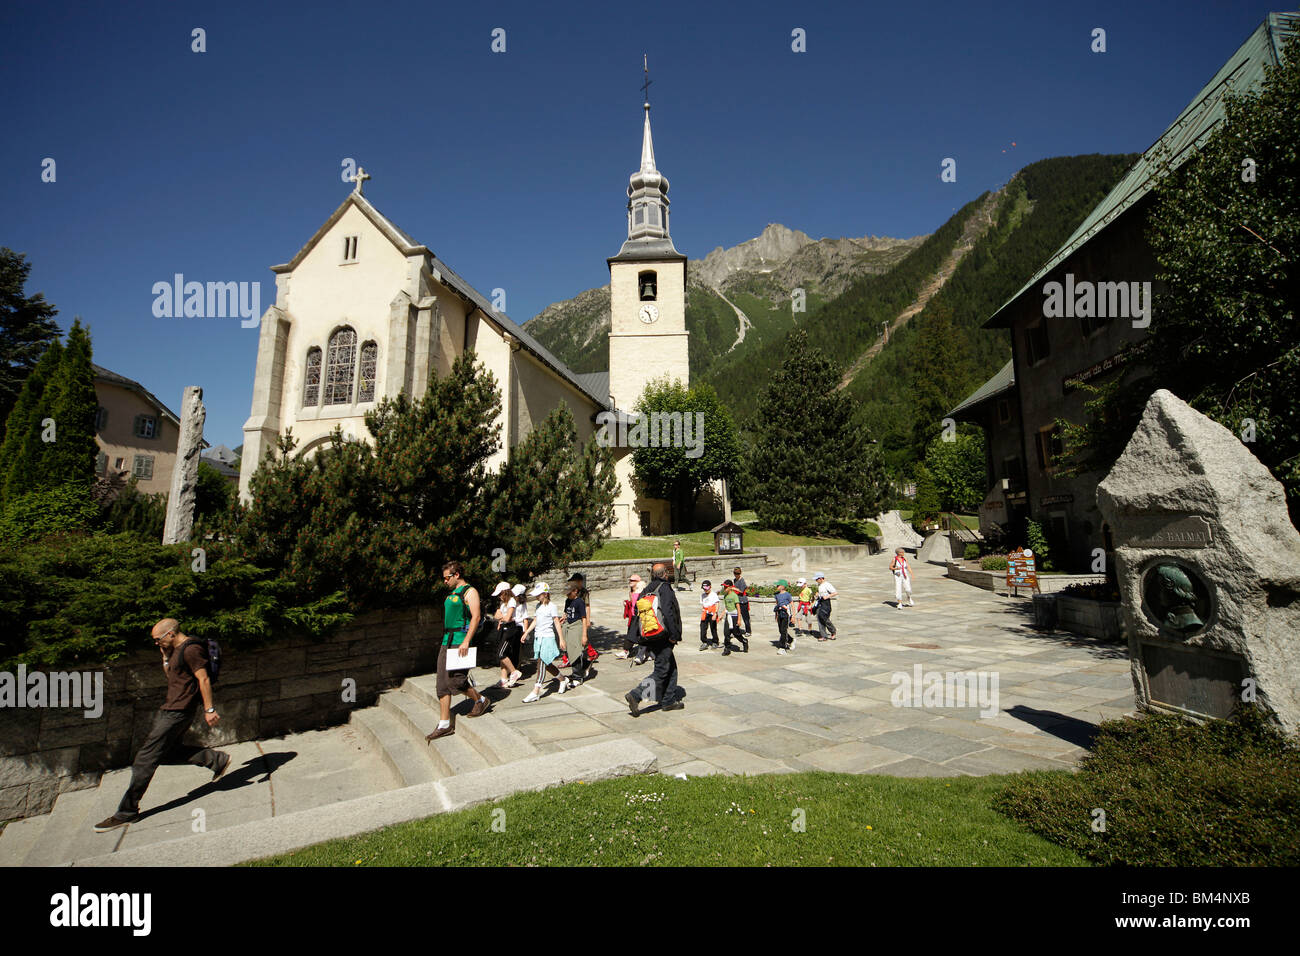 Église du village de Chamonix-Mont-Blanc, France, Europe Banque D'Images